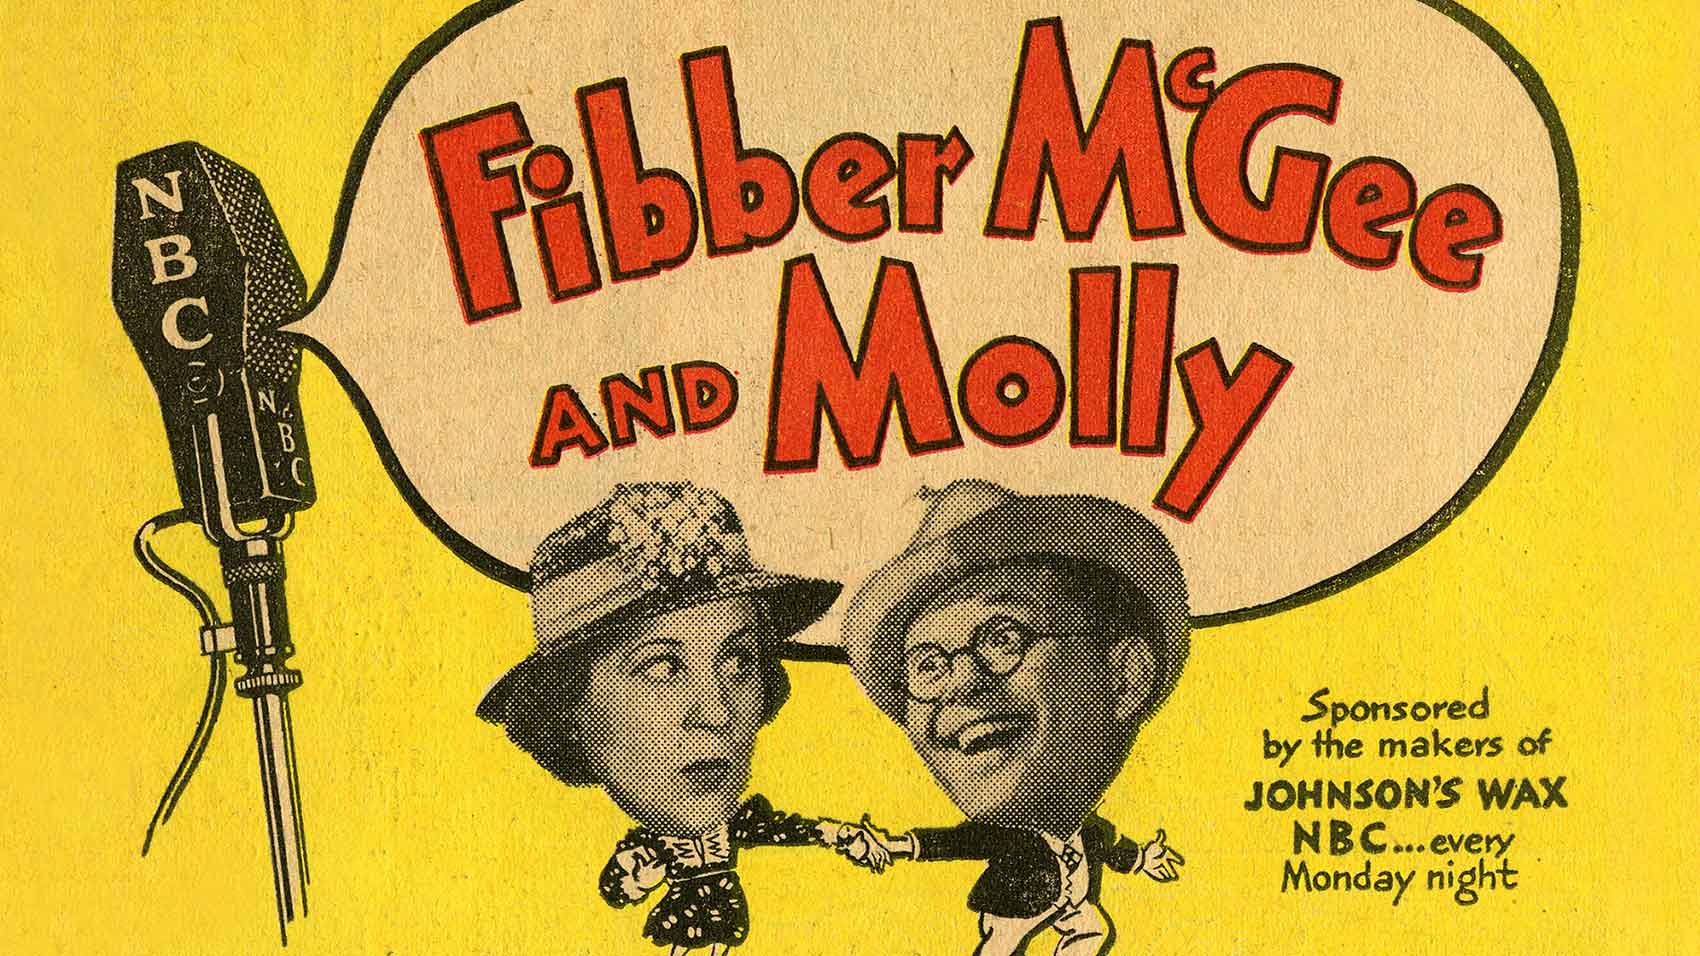 经典广播喜剧《菲伯·麦吉和莫利》插播的旧时广告。